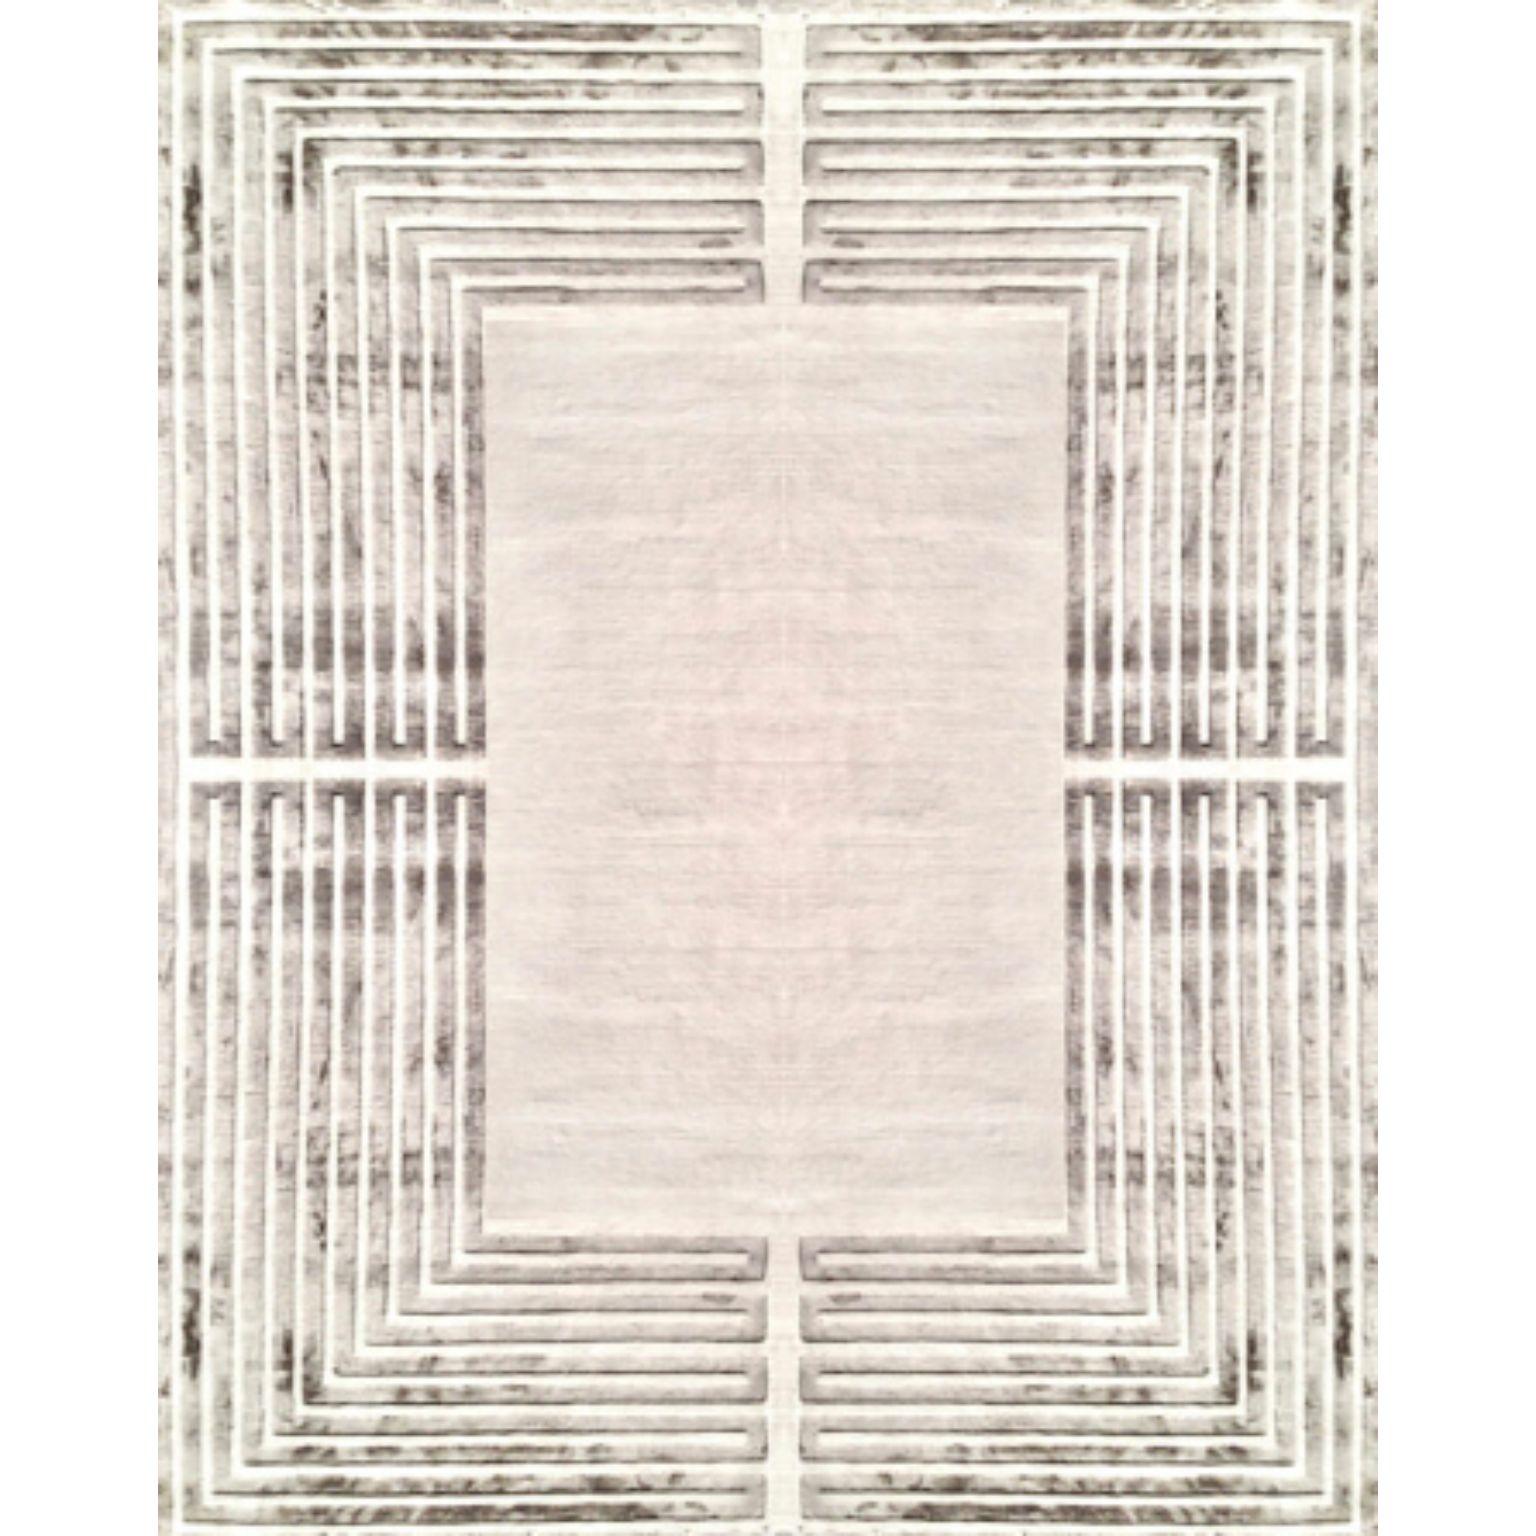 ECSTASY 200 Teppich von Illulian
Abmessungen: T300 x H200 cm 
MATERIALIEN: Wolle 80%, Seide 20%
Je nach MATERIAL und Größe sind verschiedene Varianten möglich und die Preise können variieren.

Illulian, eine historische und prestigeträchtige